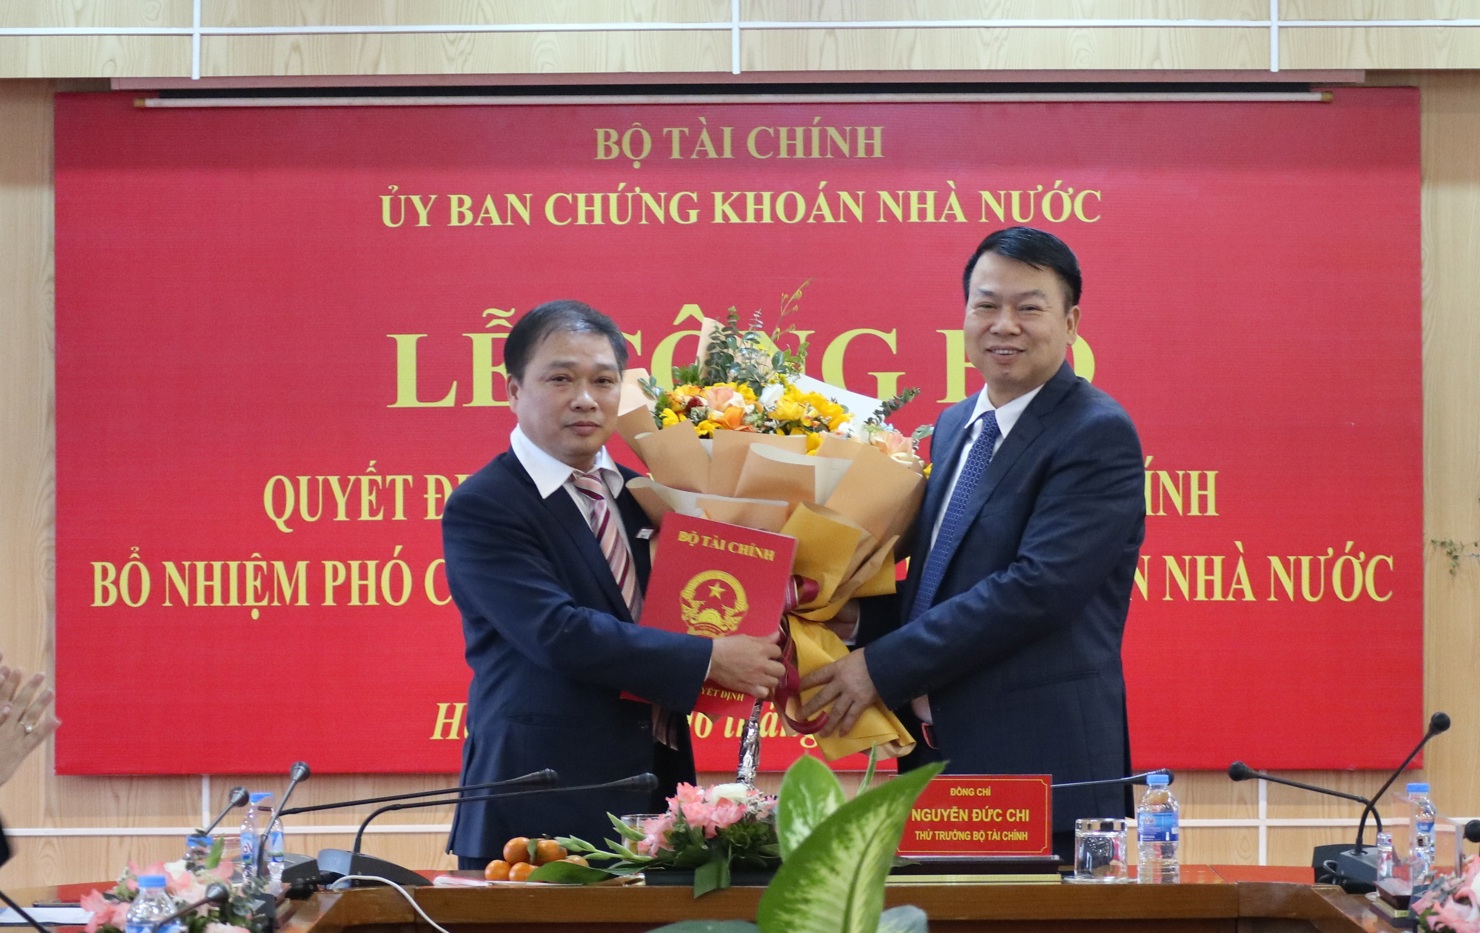 Thứ trưởng Bộ Tài chính Nguyễn Đức Chi trao Quyết định bổ nhiệm Phó Chủ tịch UBCKNN đối với ông Lương Hải Sinh.